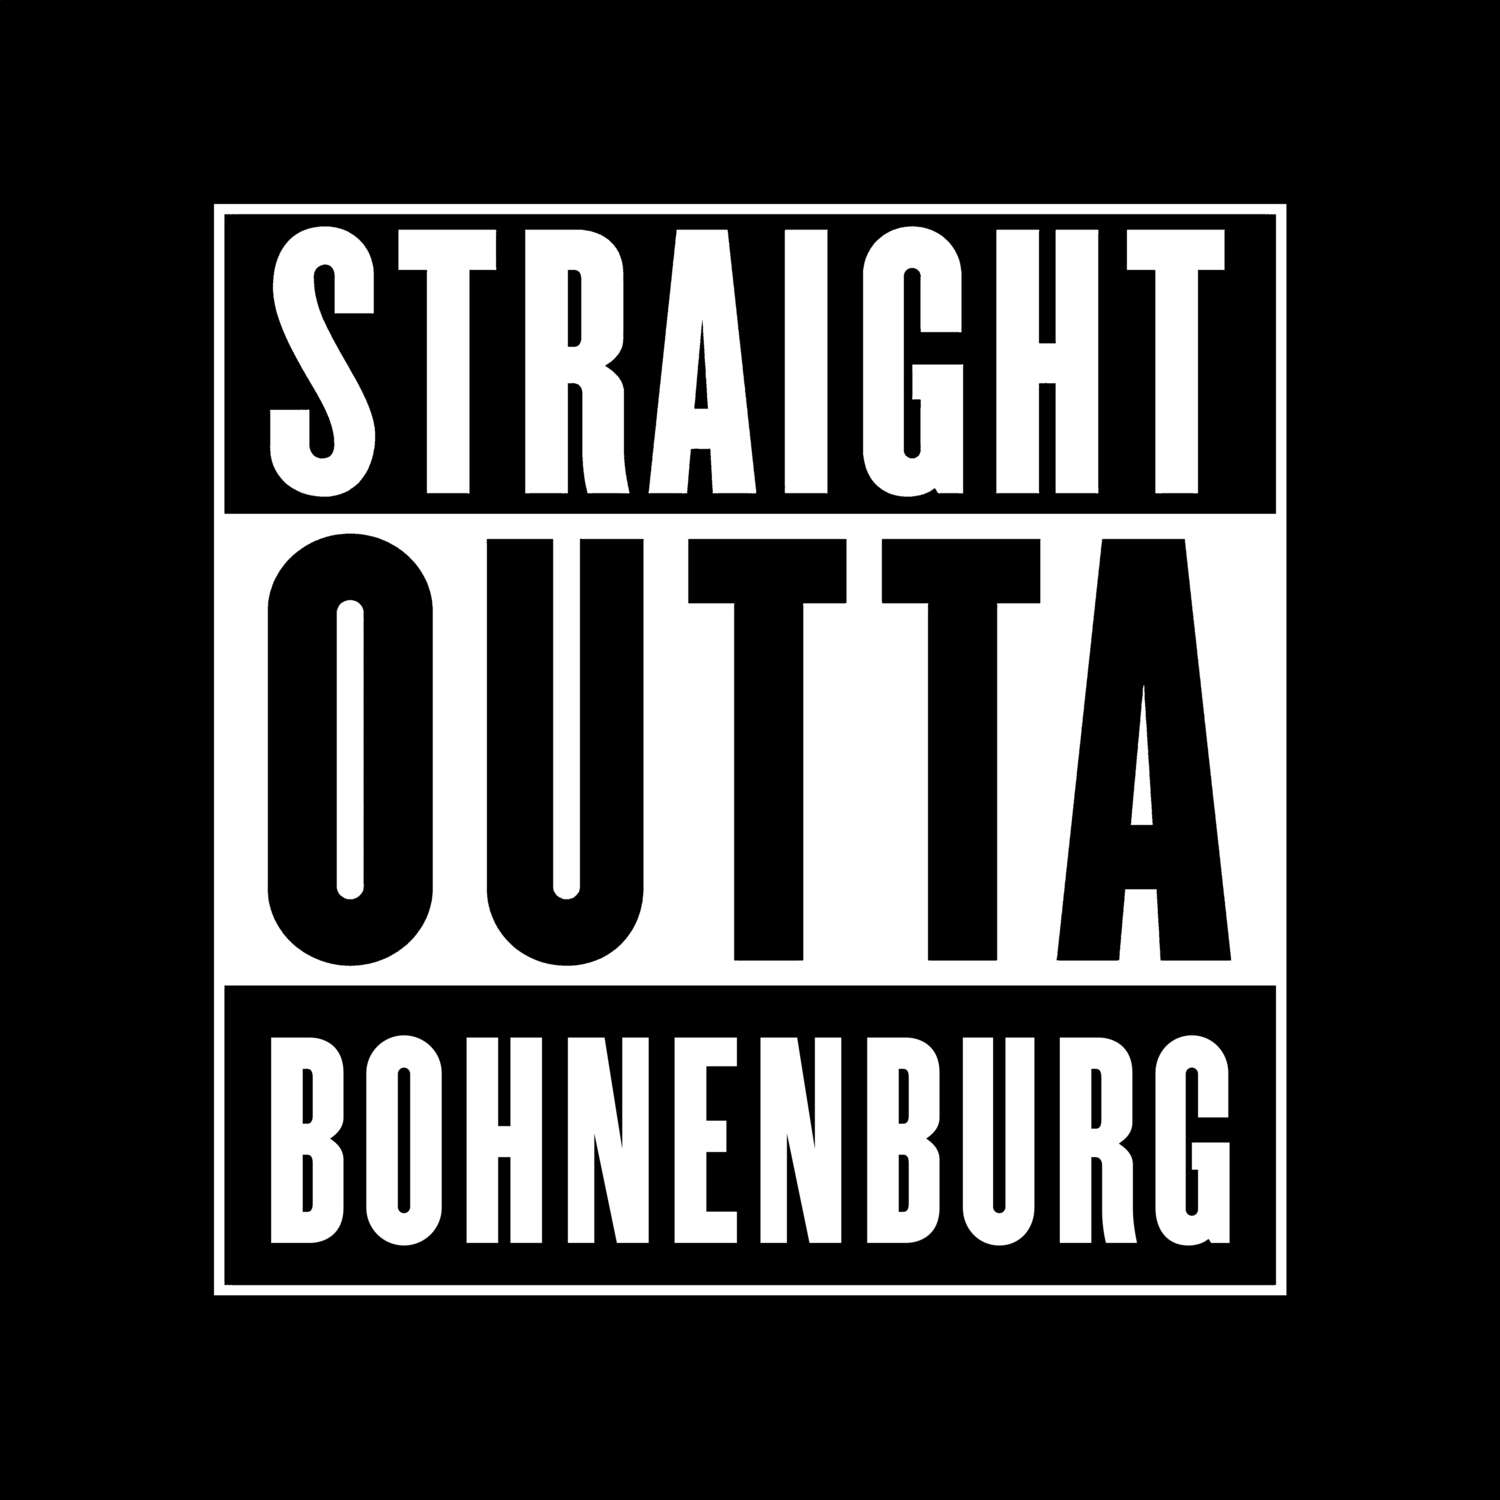 Bohnenburg T-Shirt »Straight Outta«